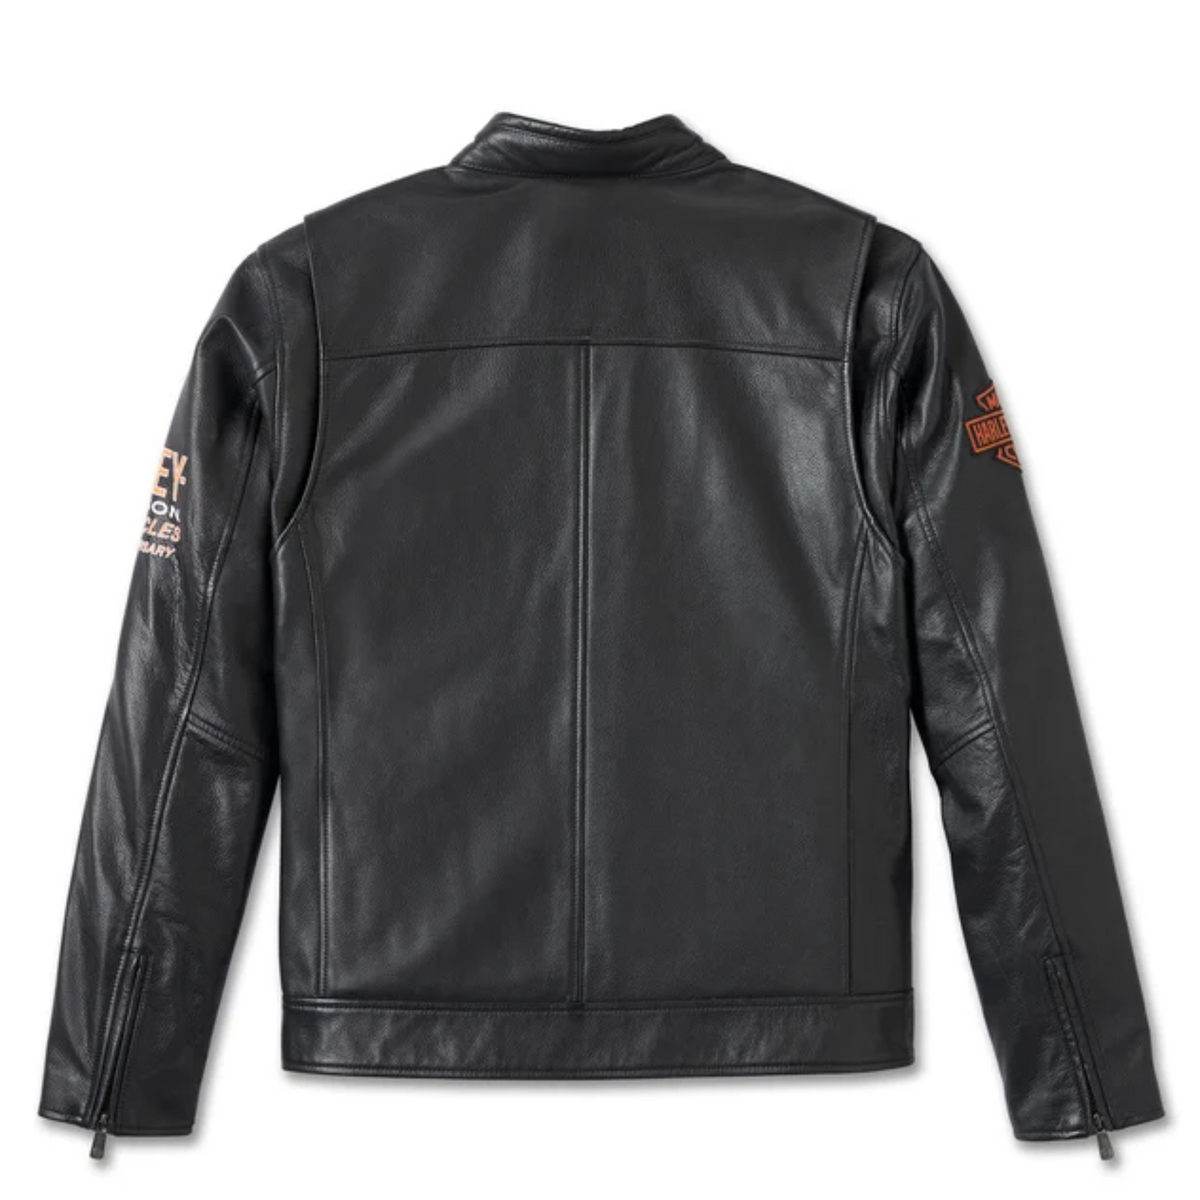 Chaqueta de cuero del 120 aniversario de los hombres Harley Davidson, chaqueta de cuero negro de la motocicleta, chaqueta vintage de aspecto clásico hecha a mano, regalo para los hombres